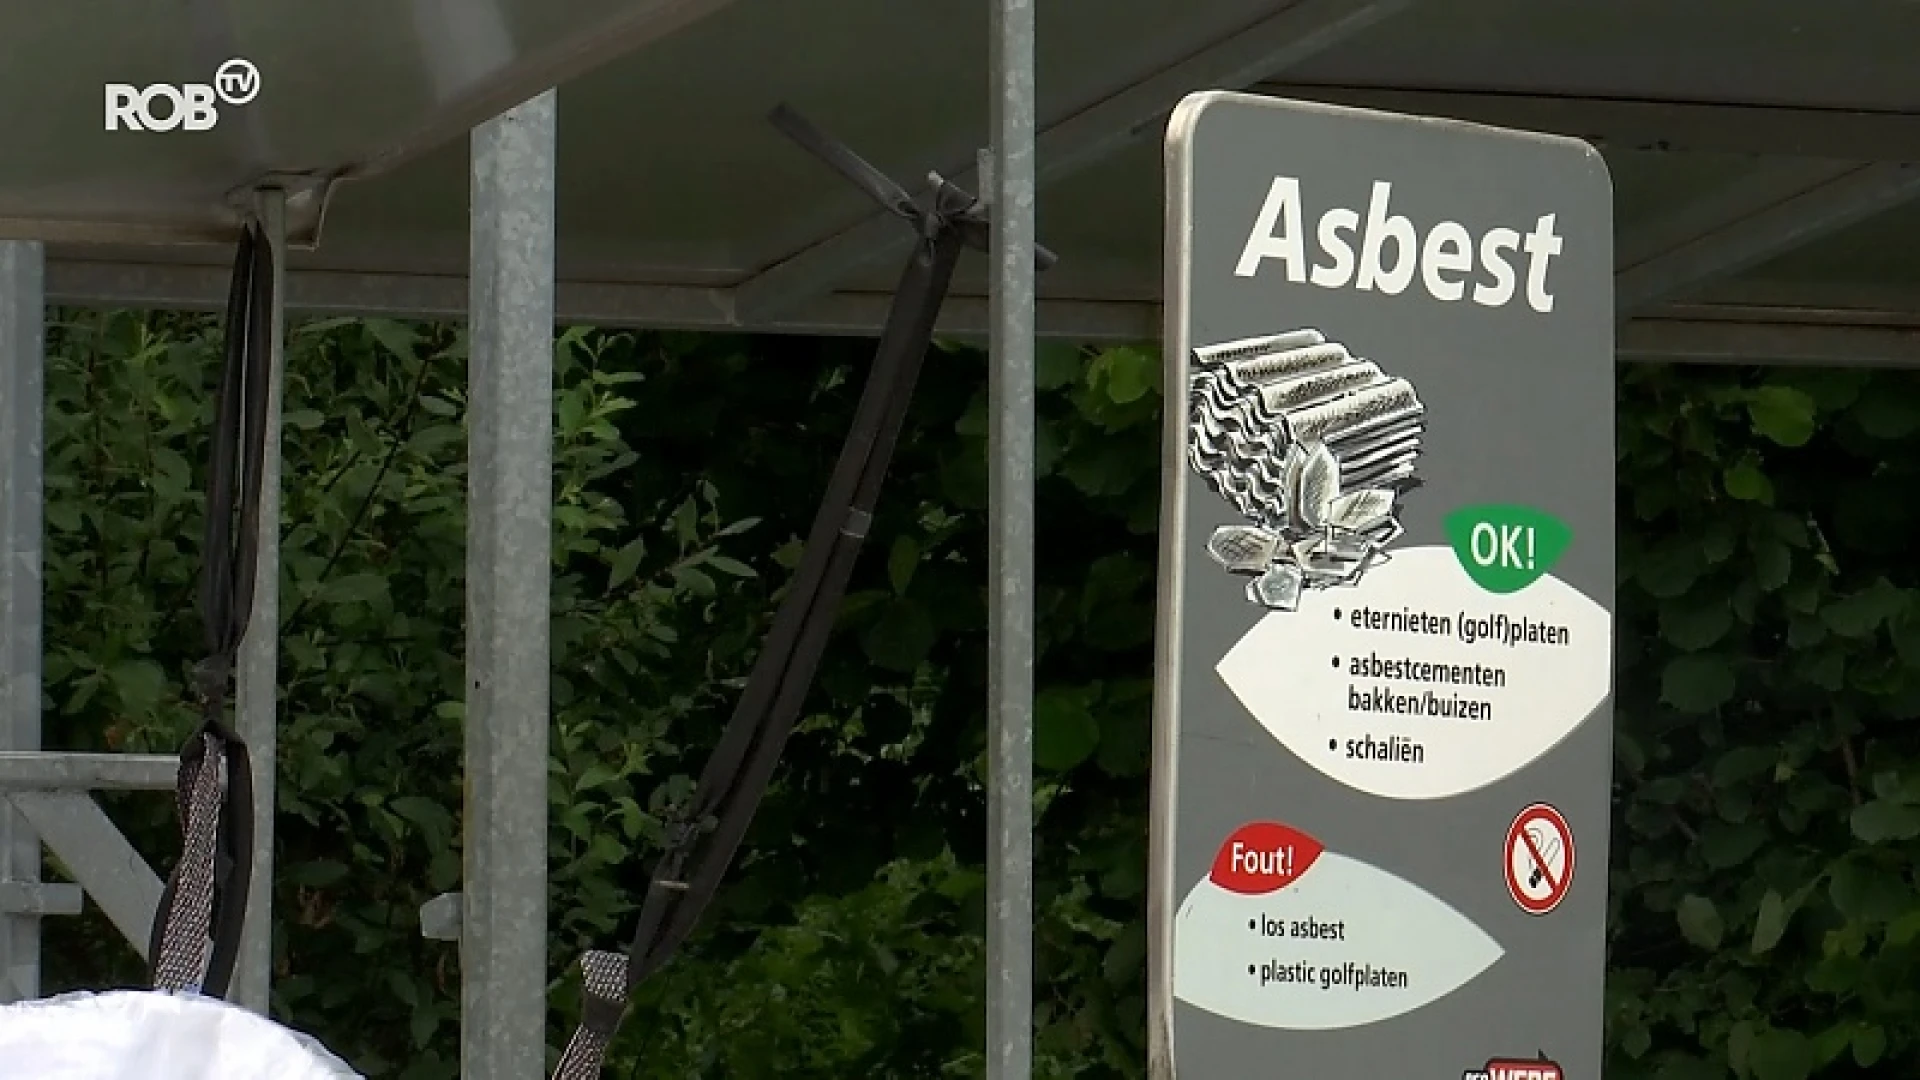 In veel containerparken moet je vanaf nu reserveren om asbest te brengen